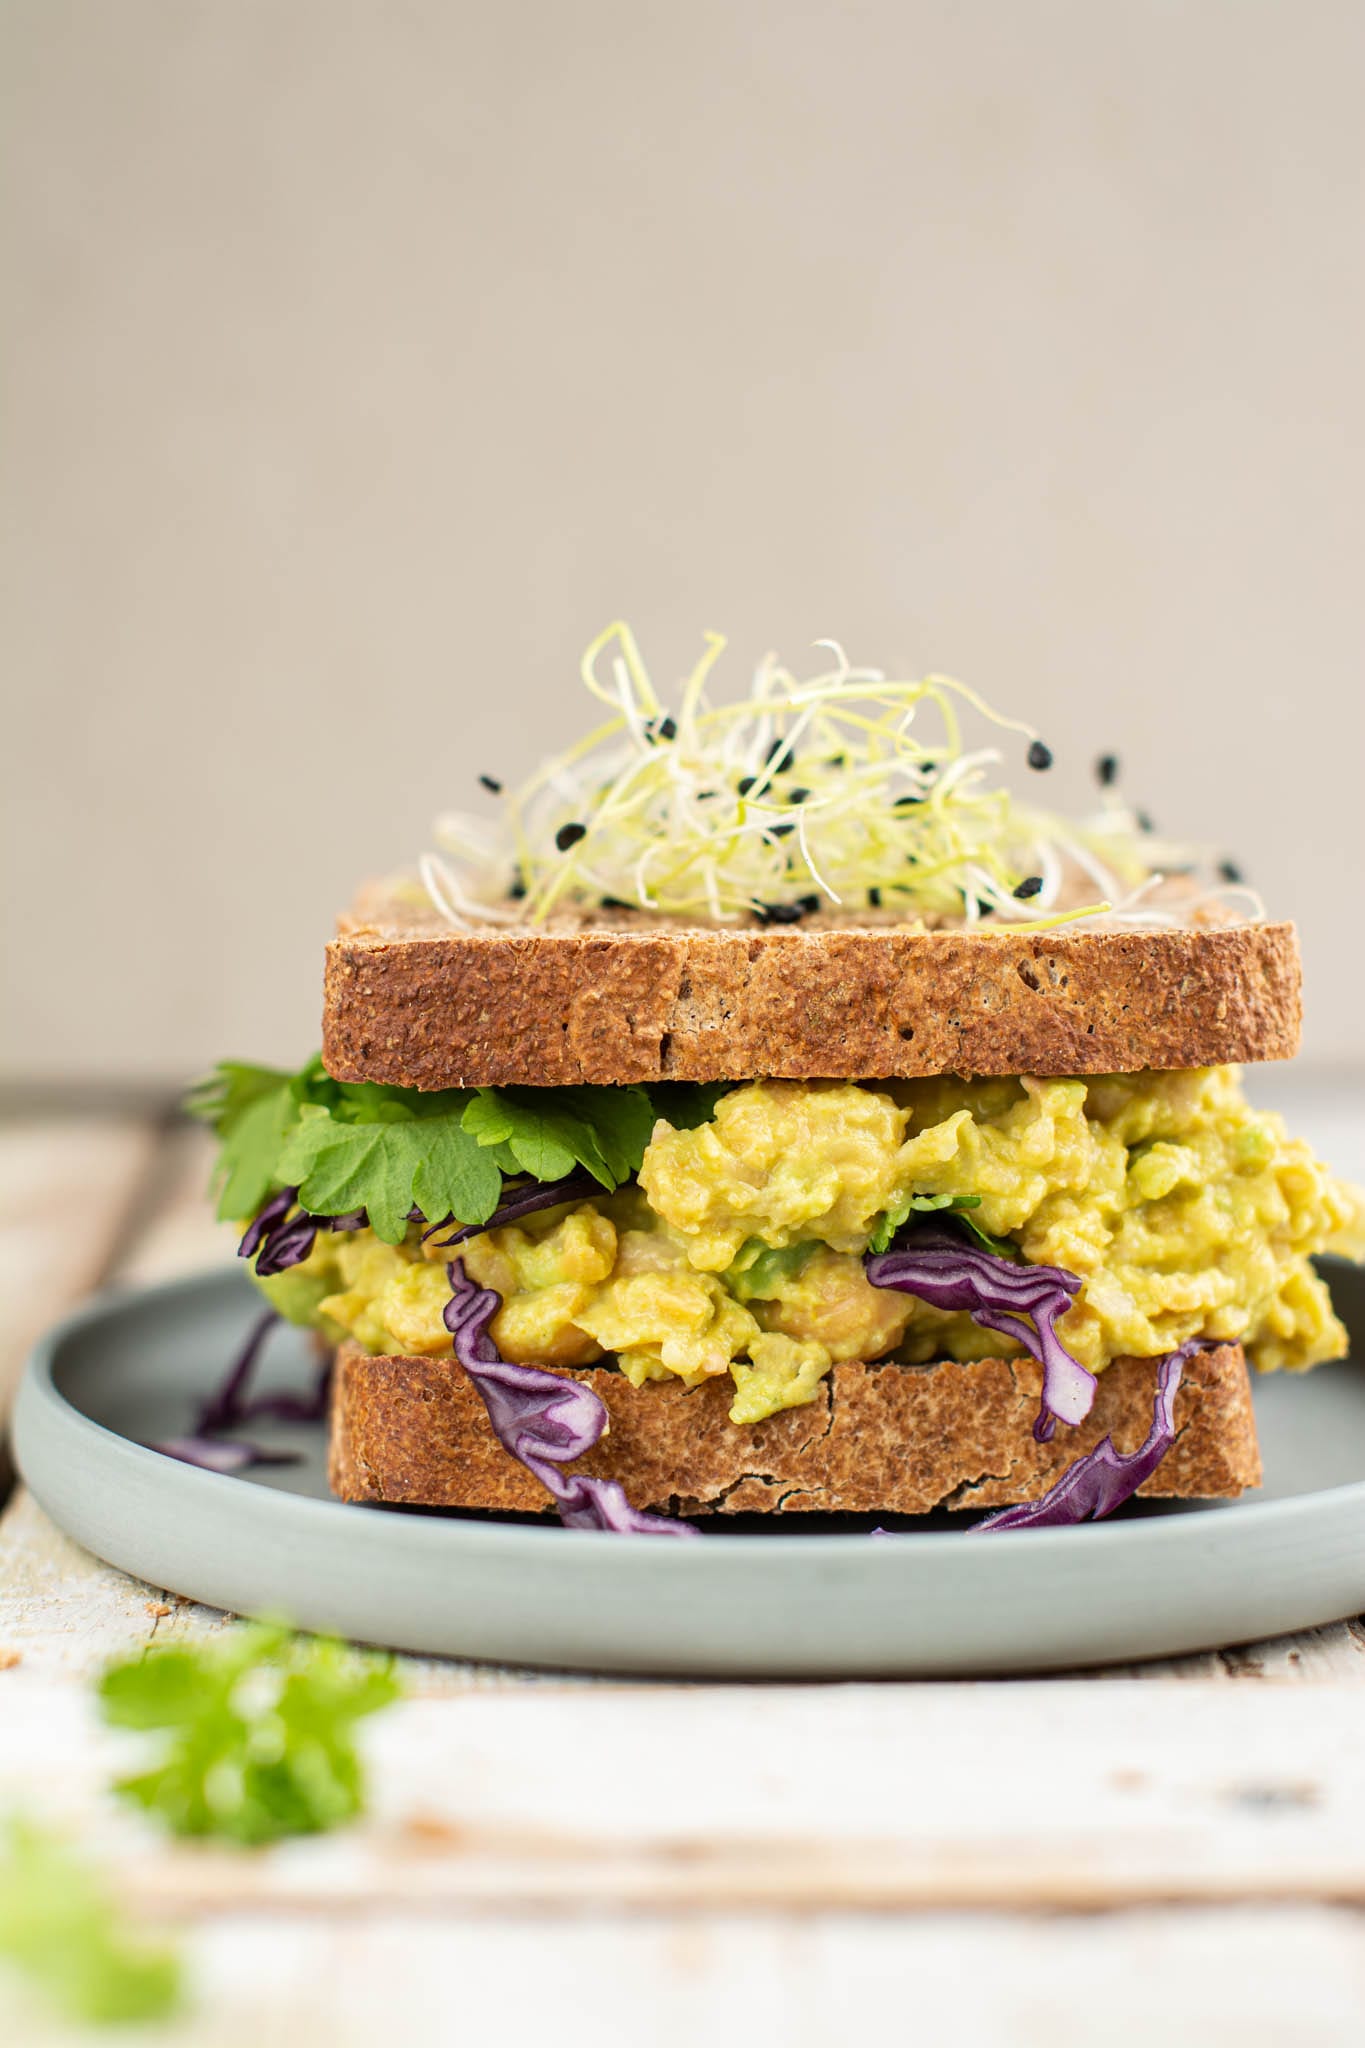 Whole Spelt Sourdough Bread Sandwich with Vegan Egg Salad